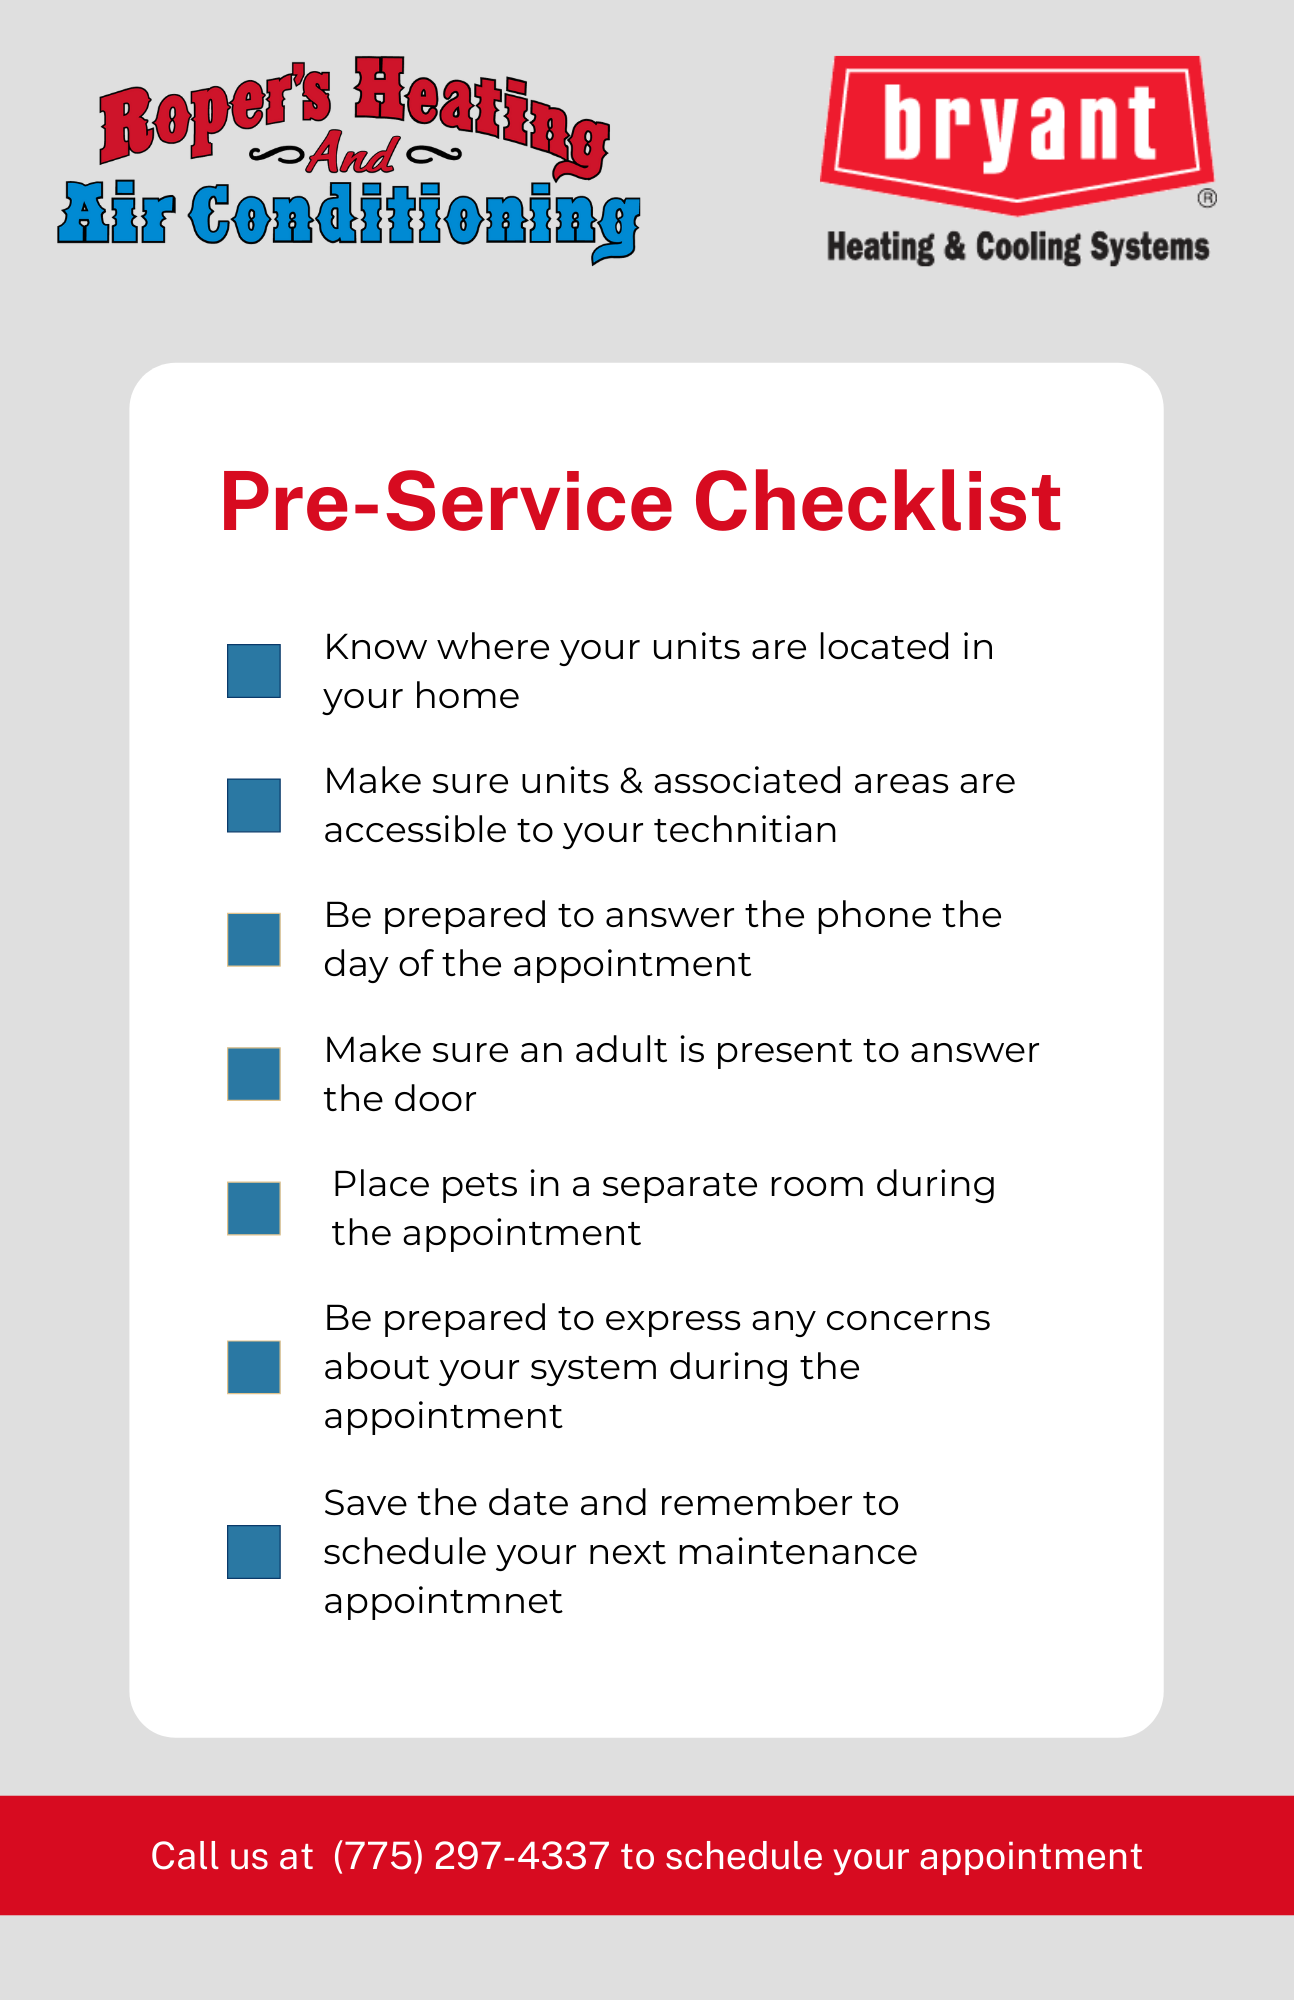 Ropers Pre-Service Checklist